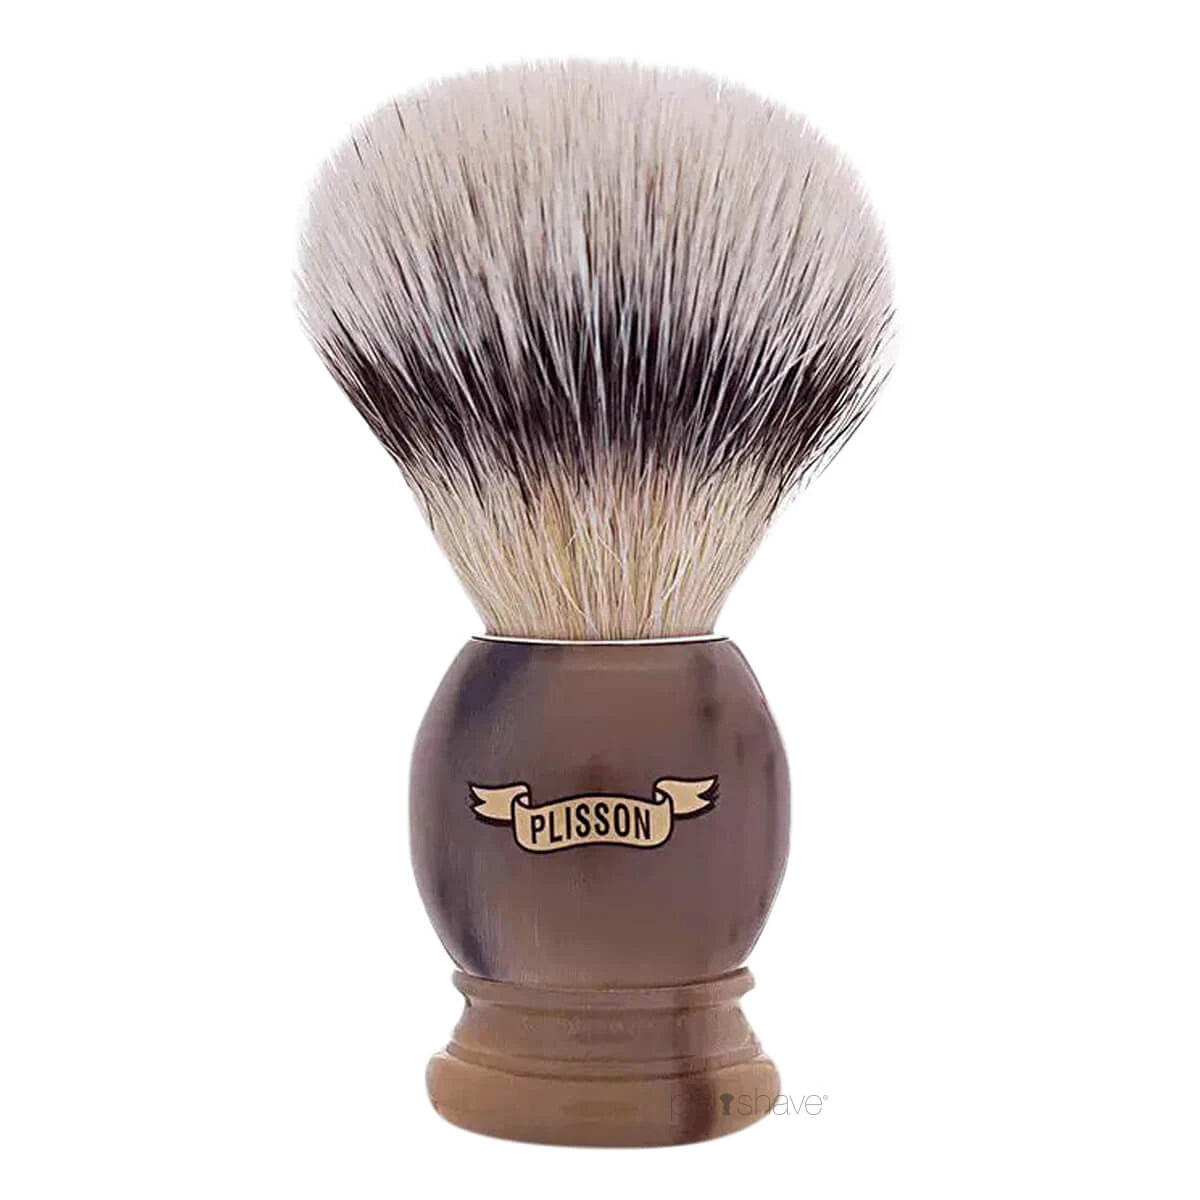 Plisson Shaving Brush, High Mountain White Fibre & Genuine Horn- Size 12